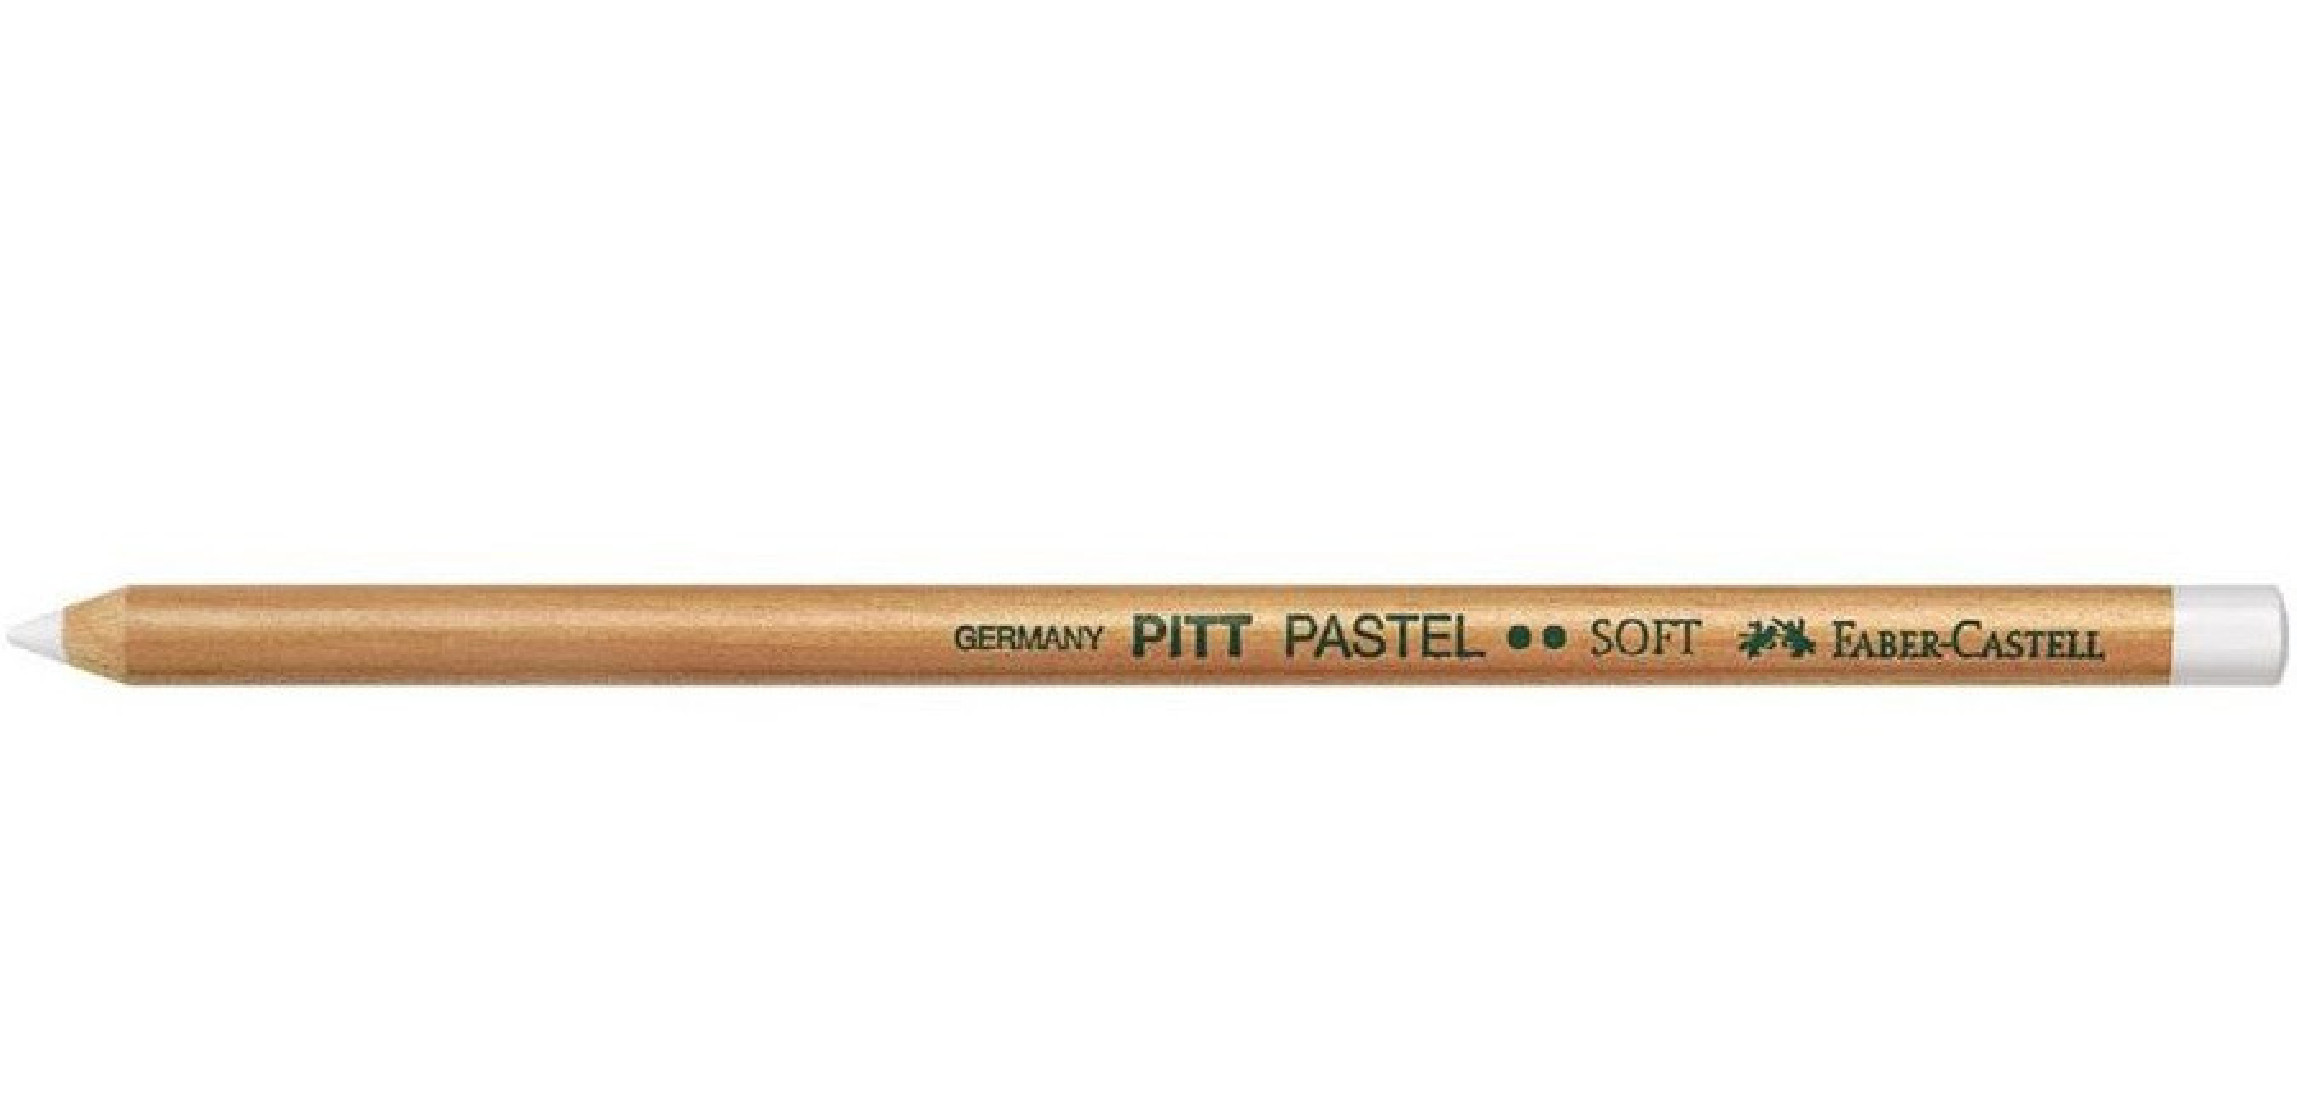 Ξυλομπογιά Pitt Pastel Χρώματος Λευκού Soft 112111 Faber Castell